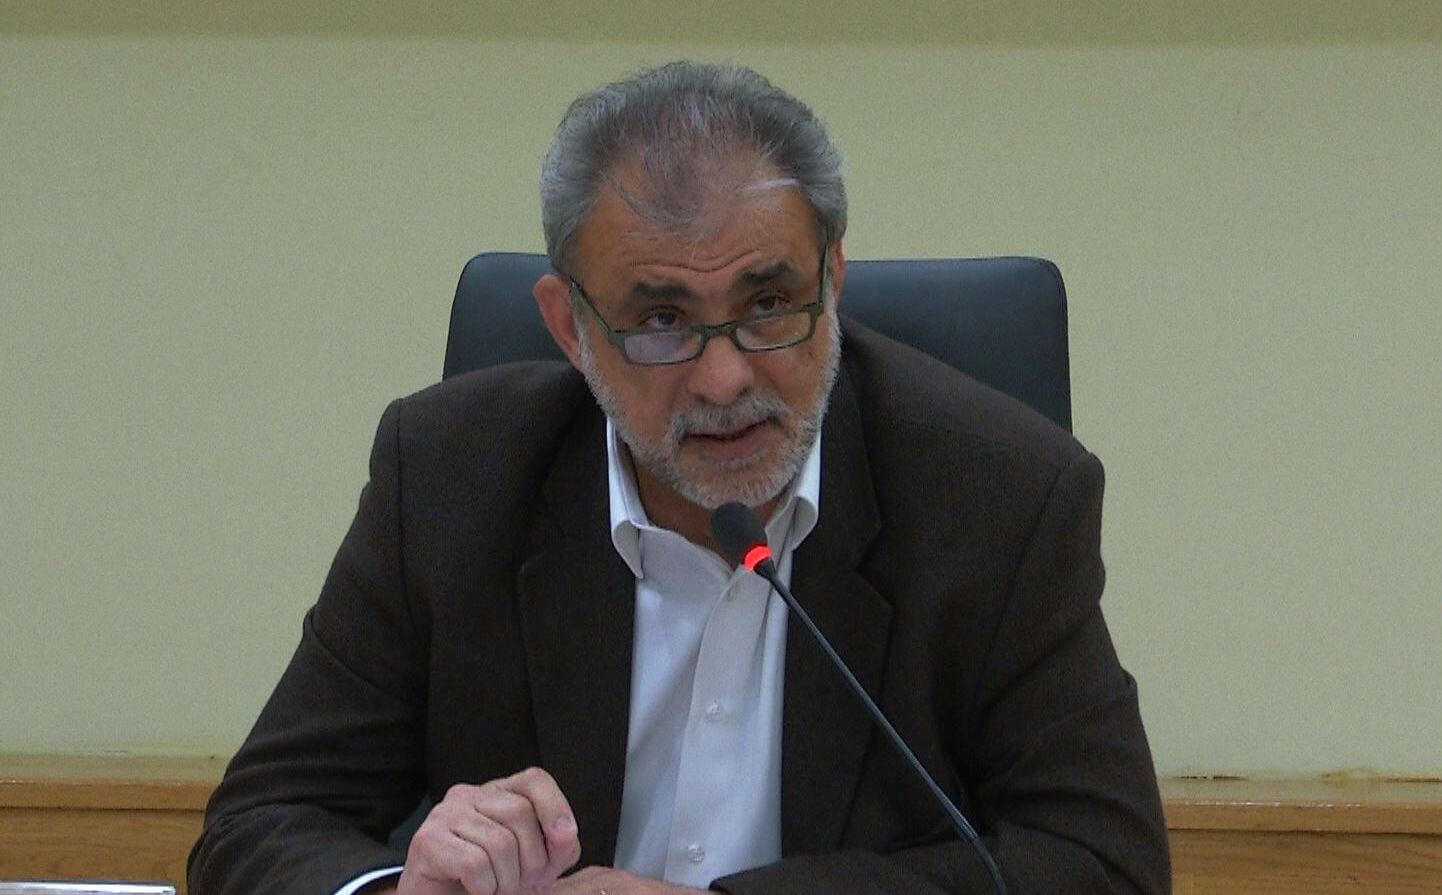 Βαλασόπουλος: “Ελπίζω Όλες Οι Δημοκρατικές Παρατάξεις Της Ηλιούπολης Να Καταδικάσουν Την Εισβολή Στο Δημαρχείο” (VIDEO)